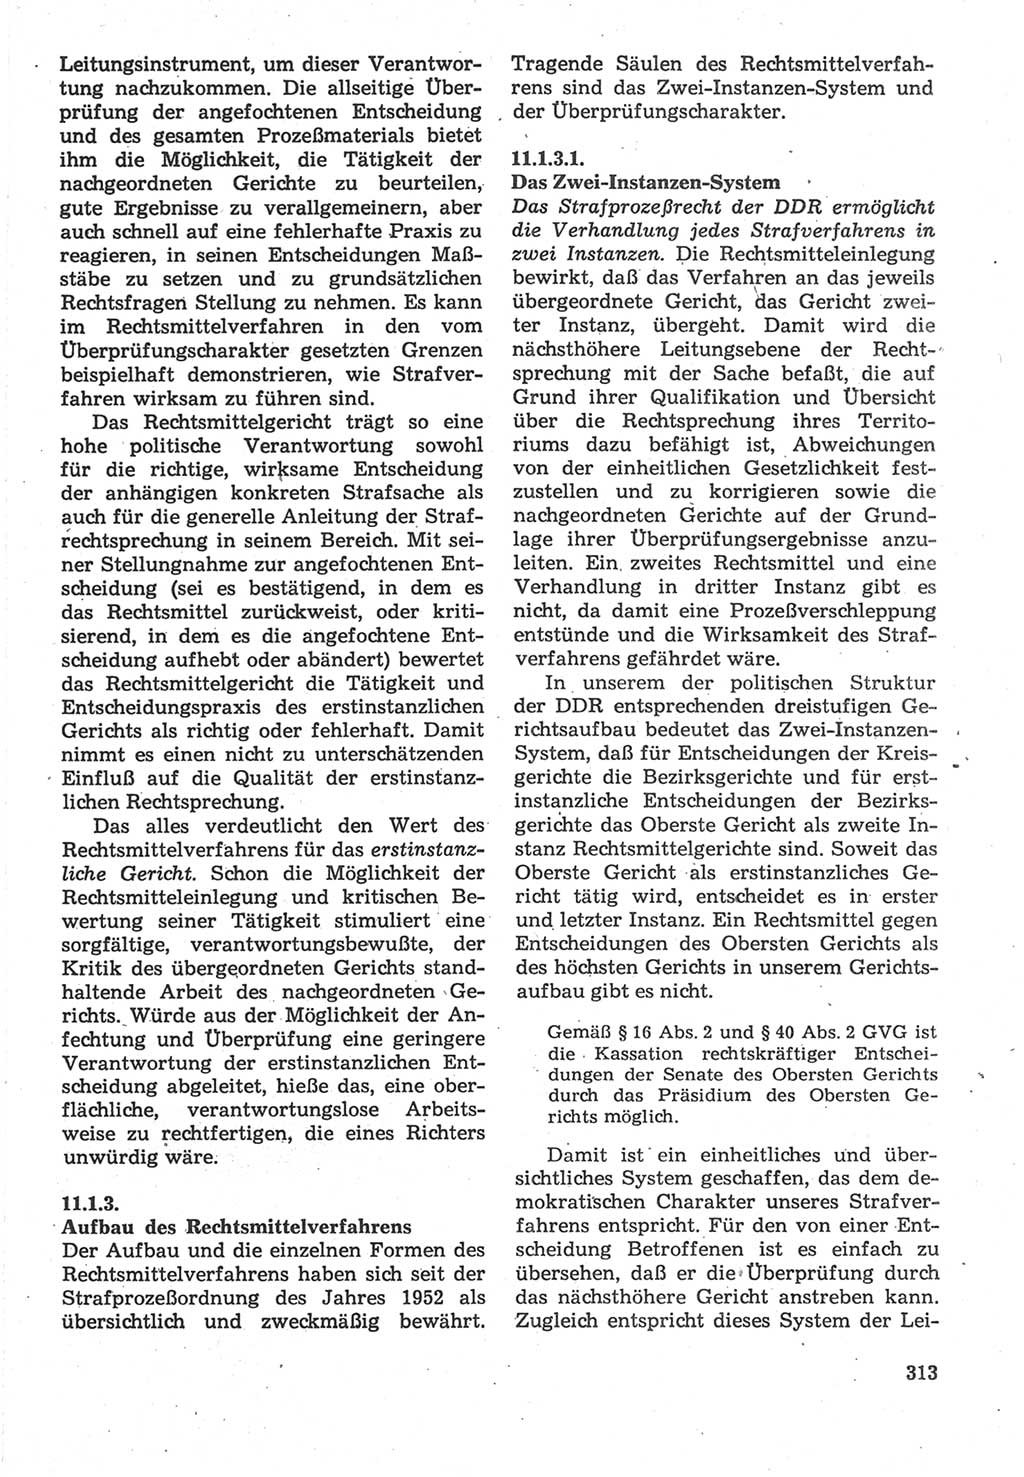 Strafverfahrensrecht [Deutsche Demokratische Republik (DDR)], Lehrbuch 1987, Seite 313 (Strafverf.-R. DDR Lb. 1987, S. 313)